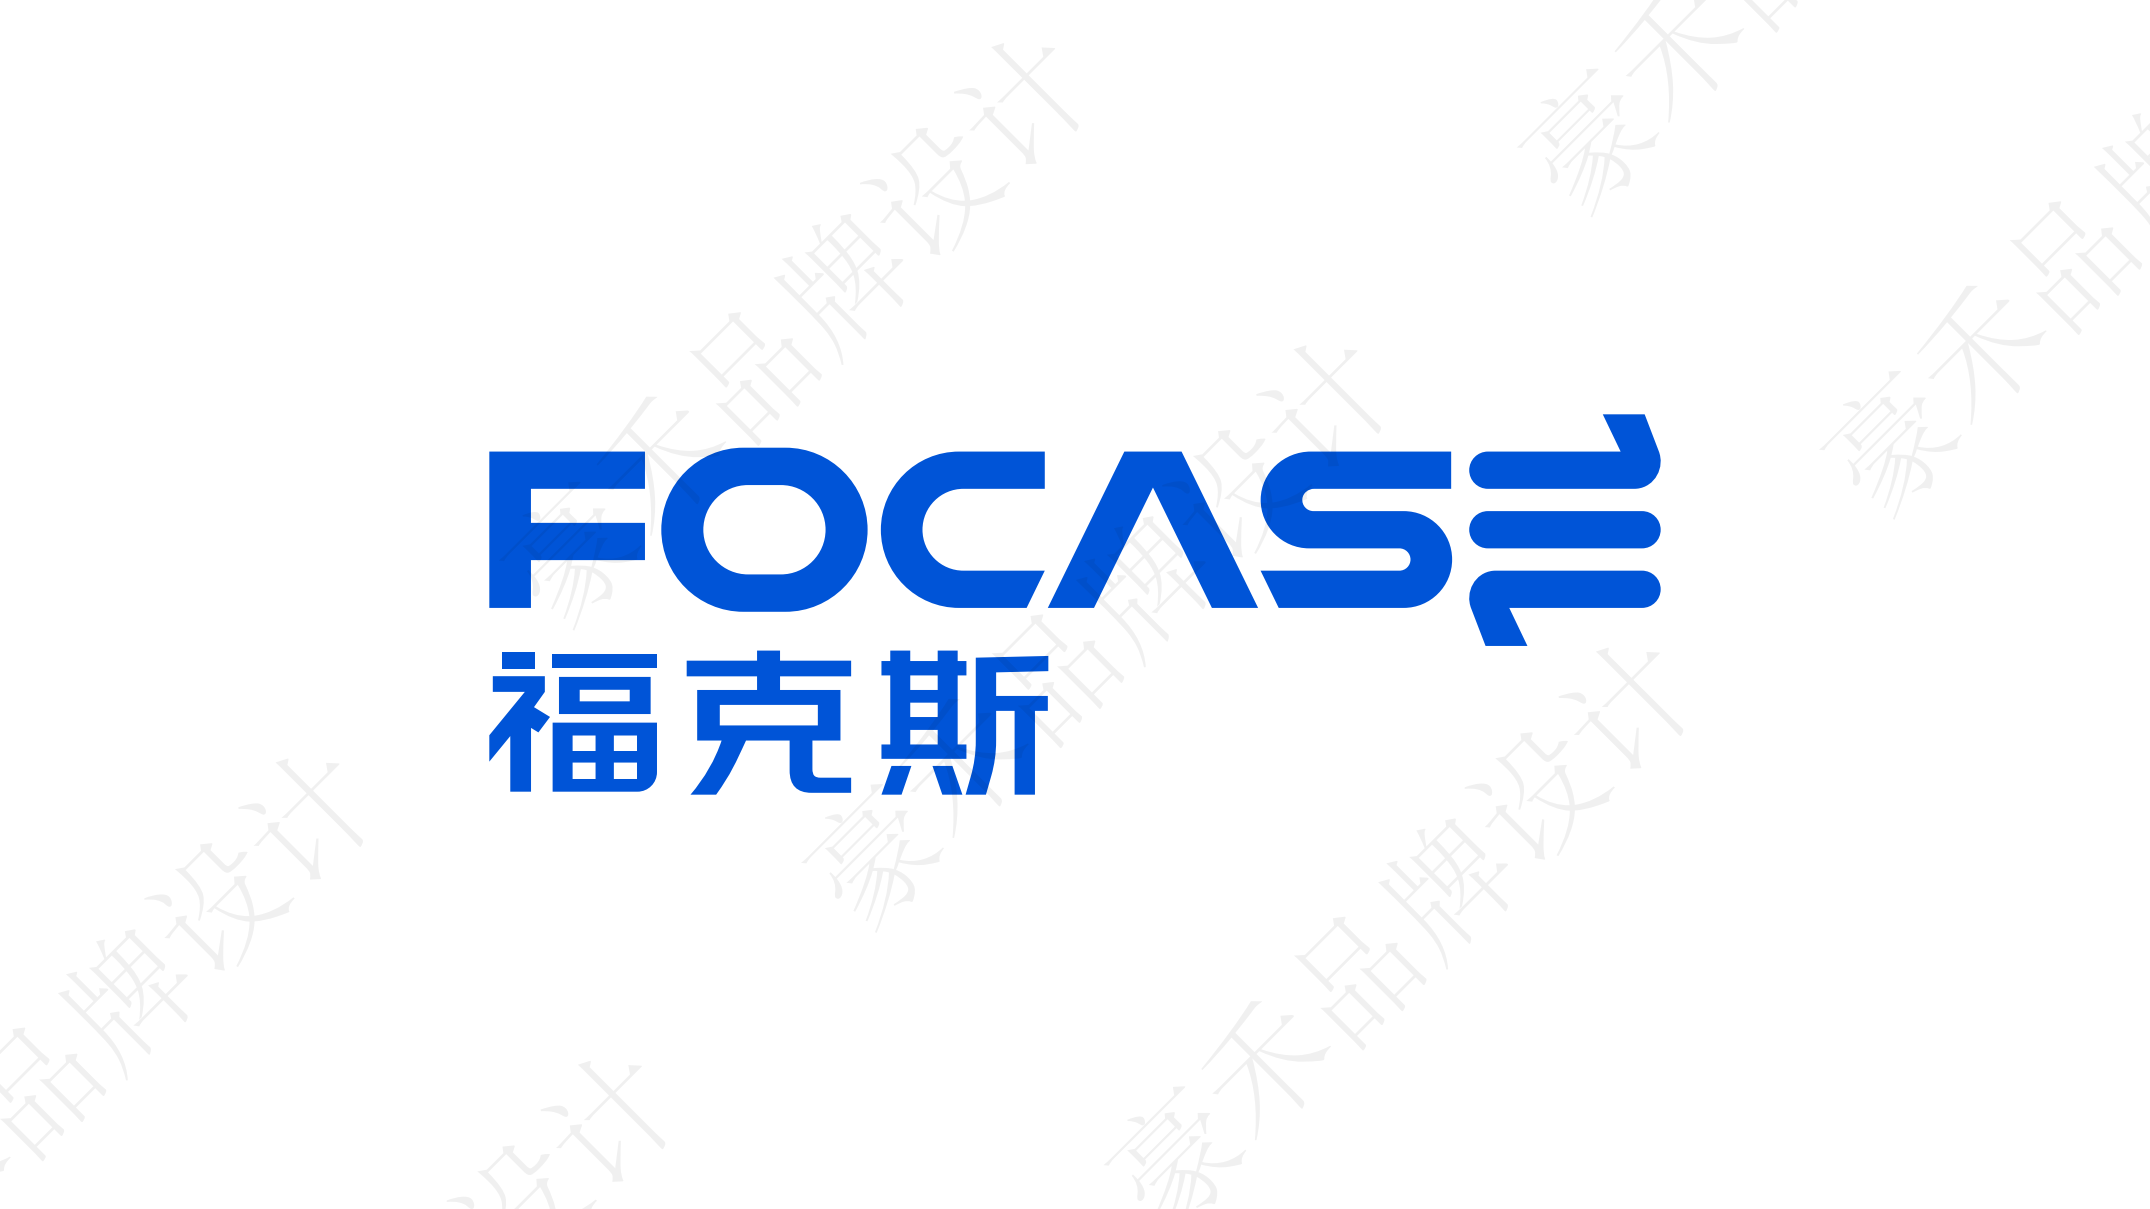 企业形象KOK全站登录入口
-FOCASE企业logoKOK全站登录入口
-上海logoKOK全站登录入口
公司